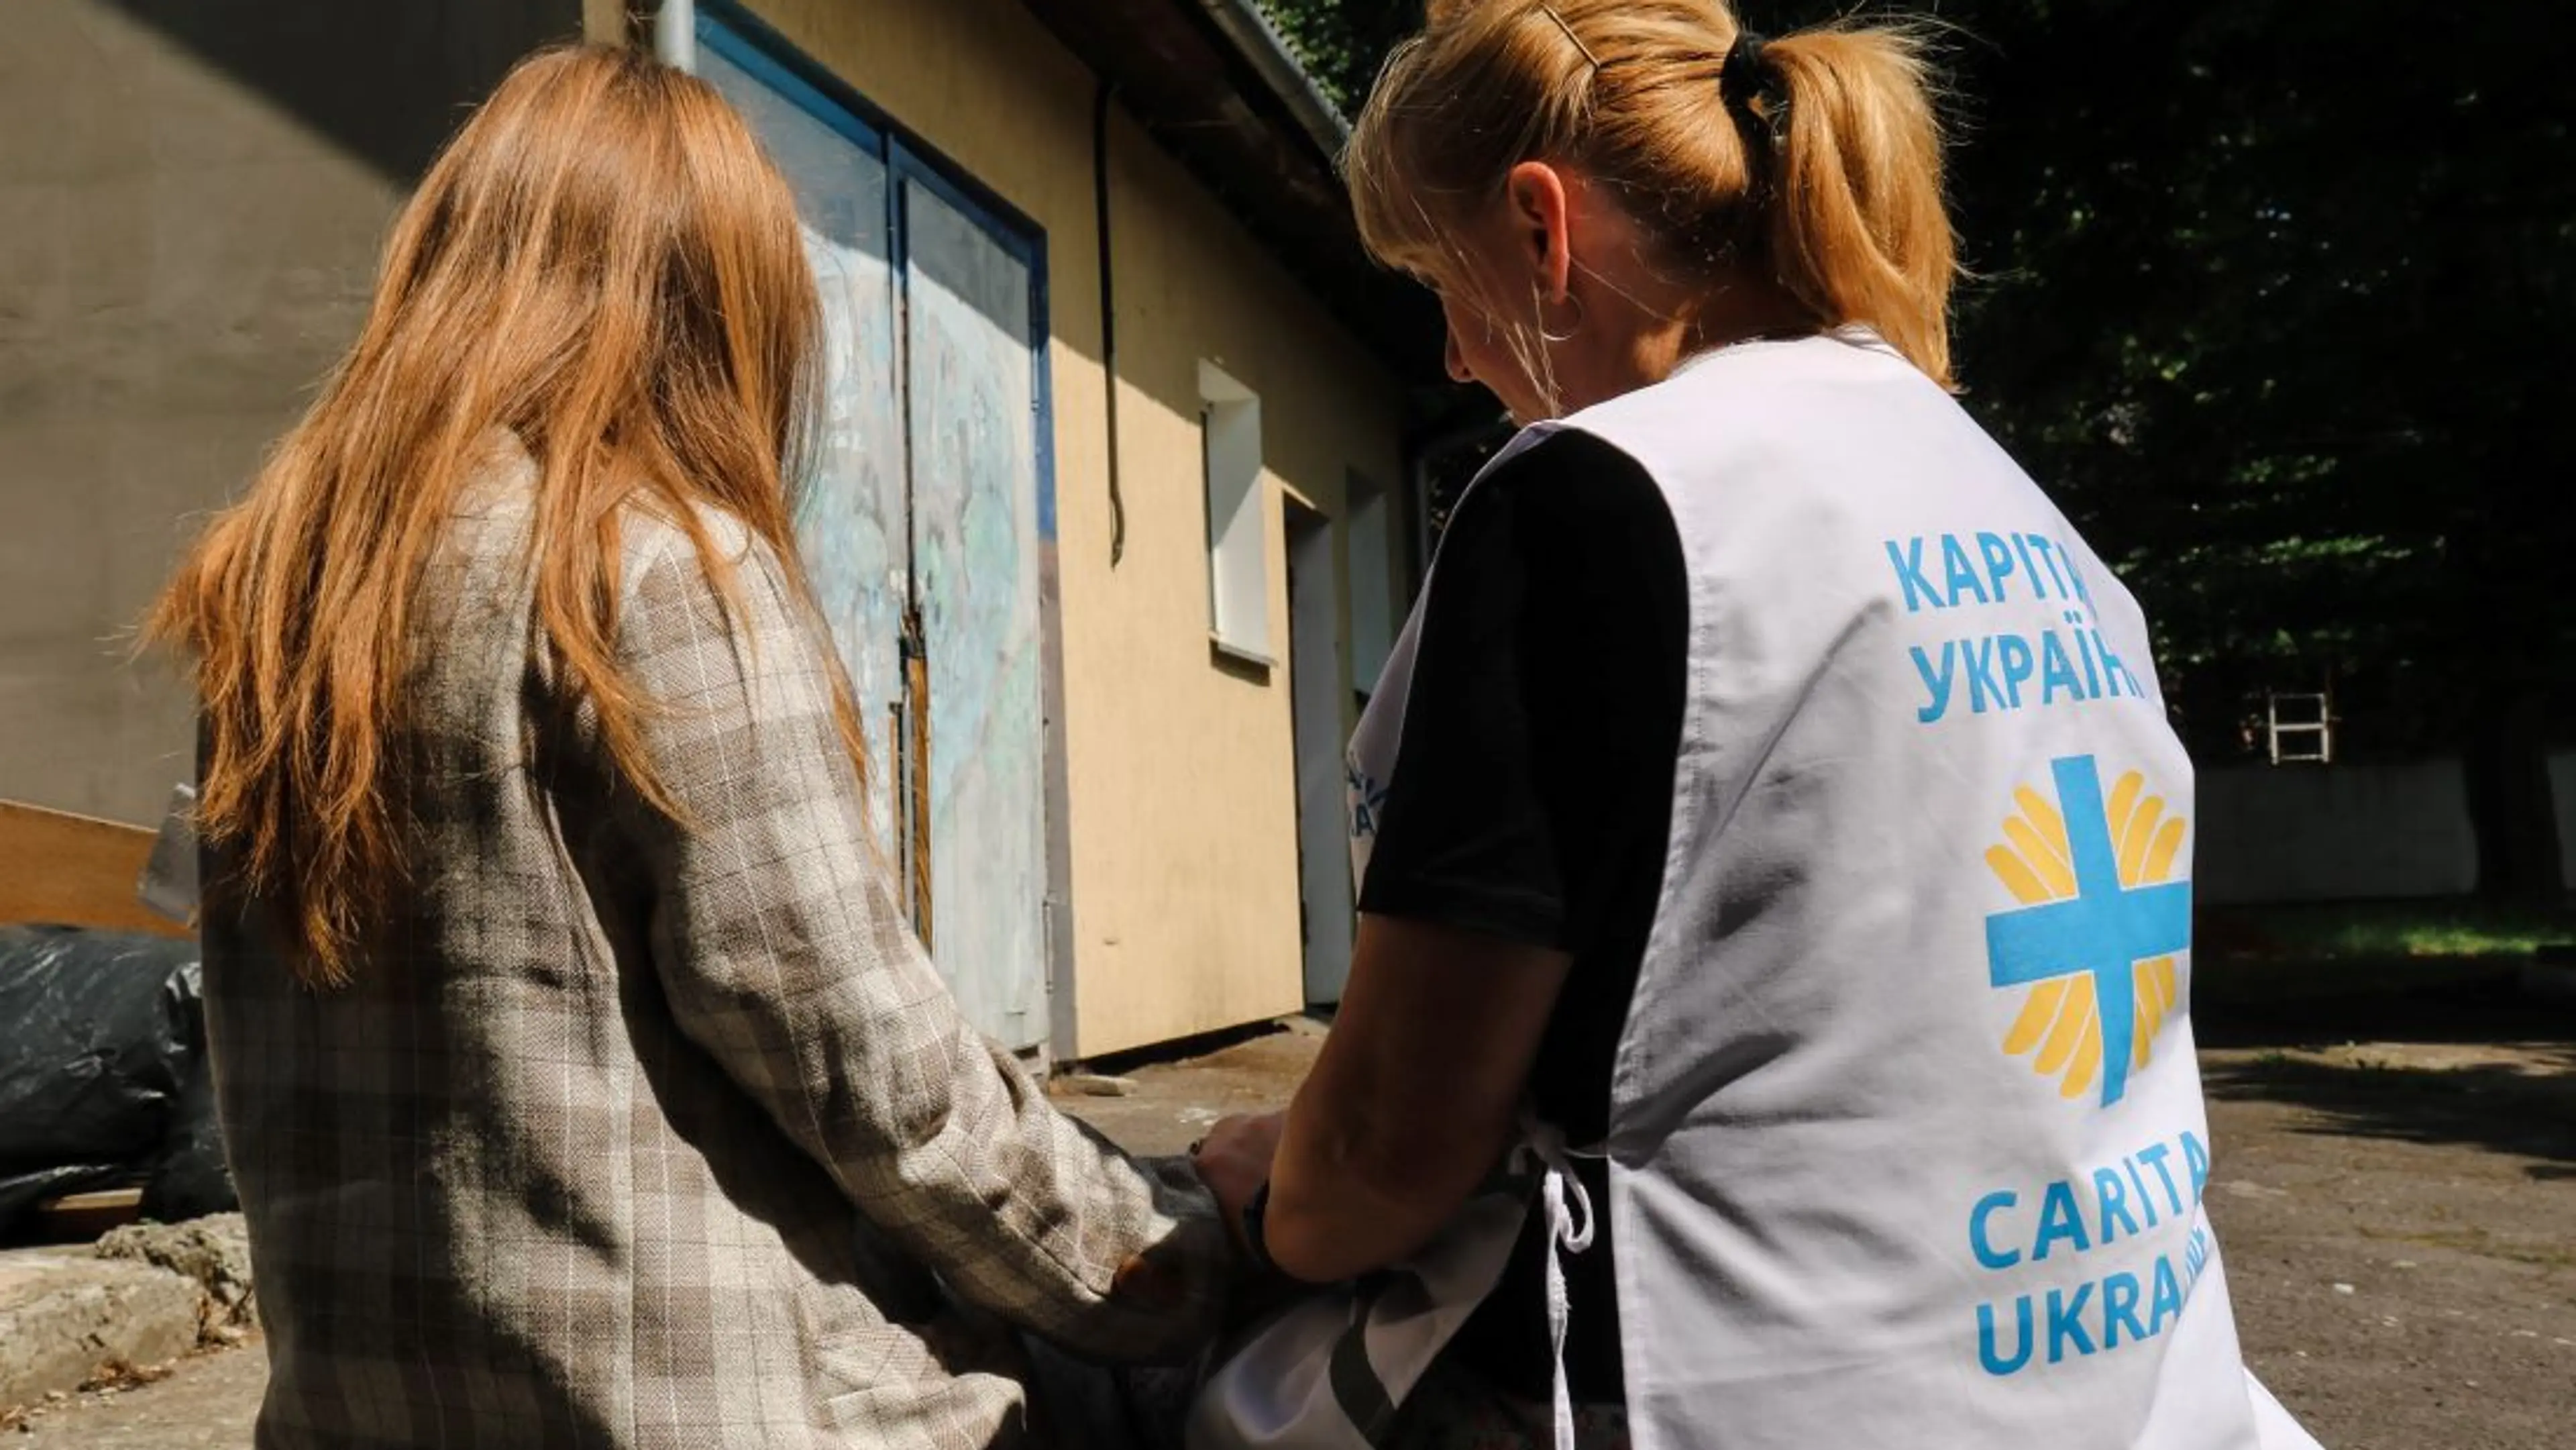 Caritas Ukraine human trafficking 